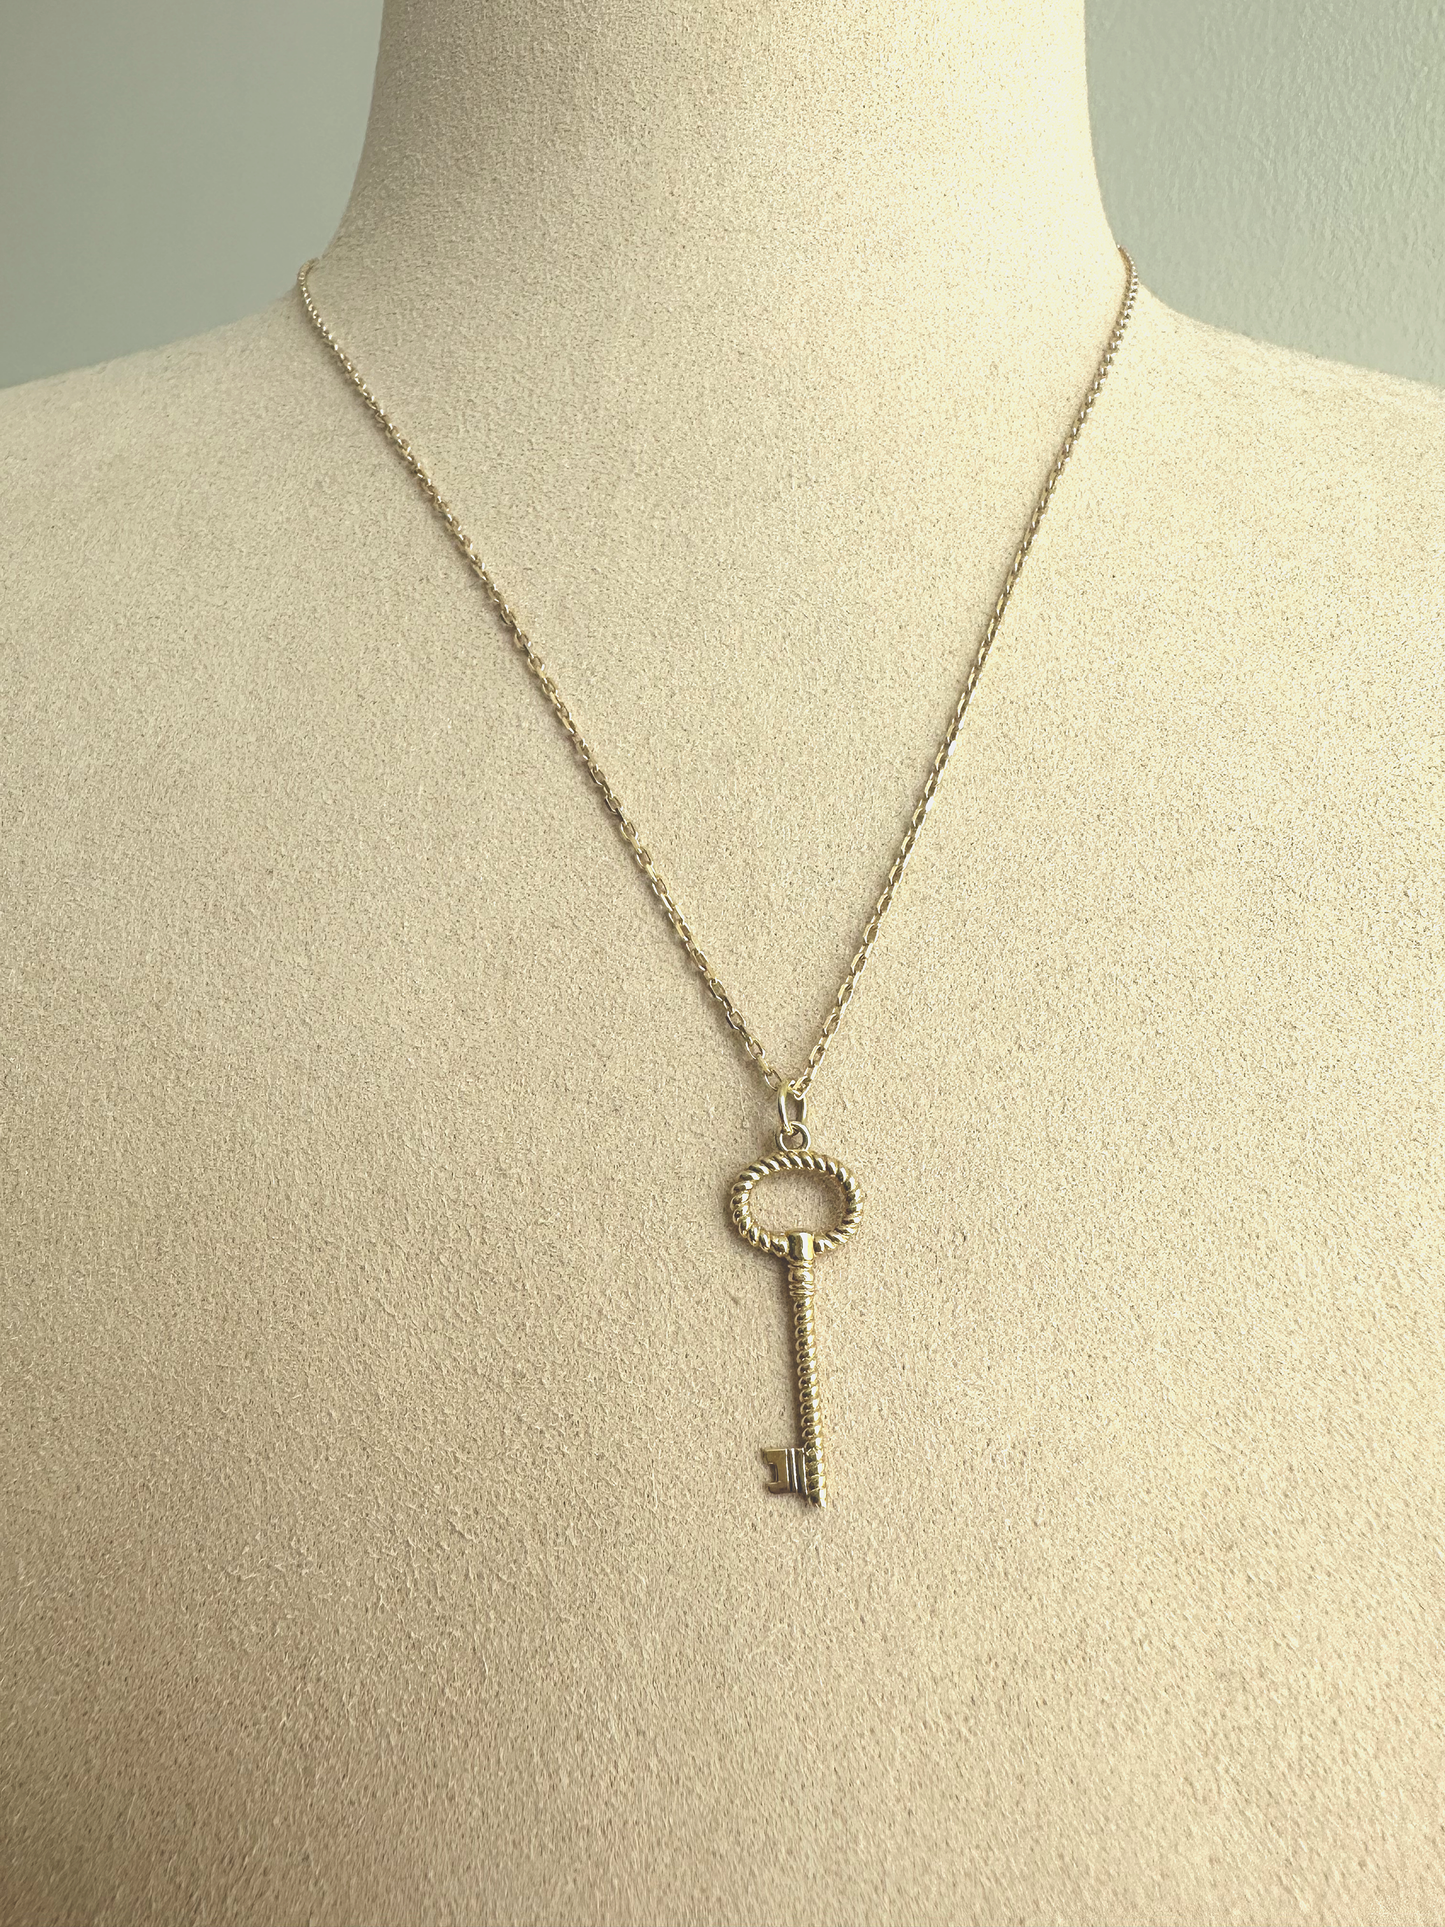 18k Necklace - Love Key